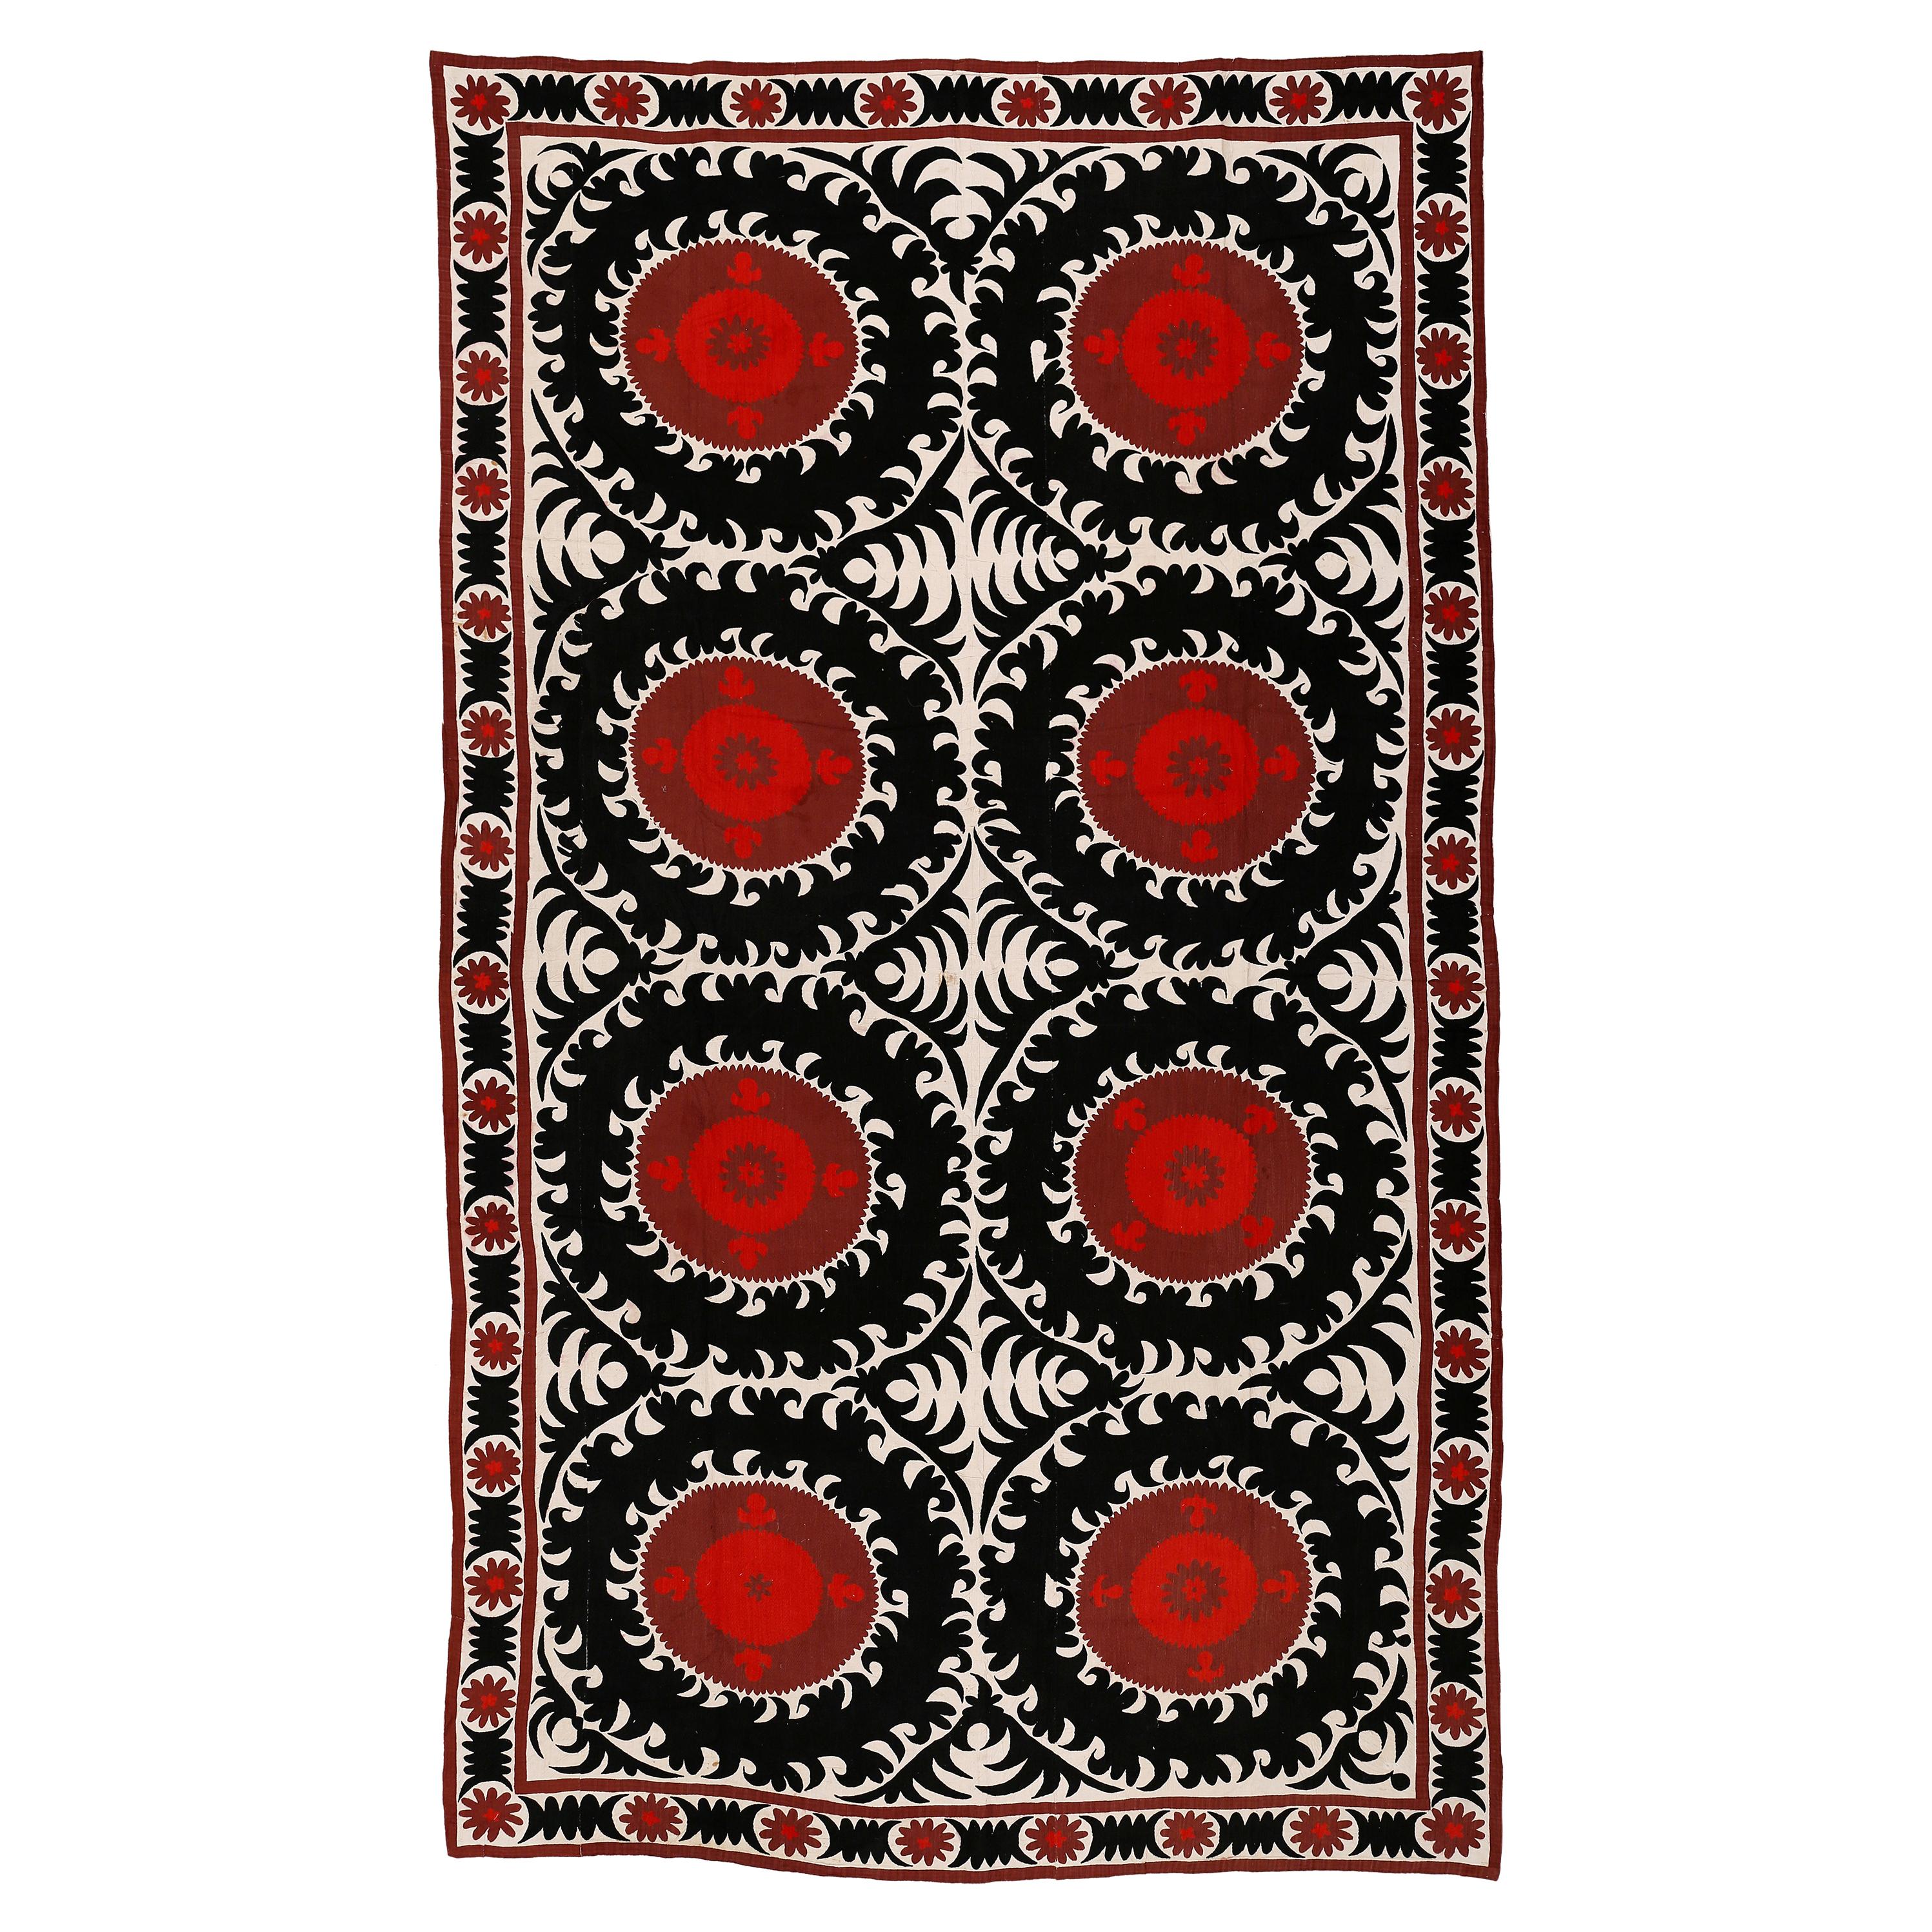 Zentralasiatisch bestickter Suzani-Teppich aus Seide in Übergröße aus Zentralasien